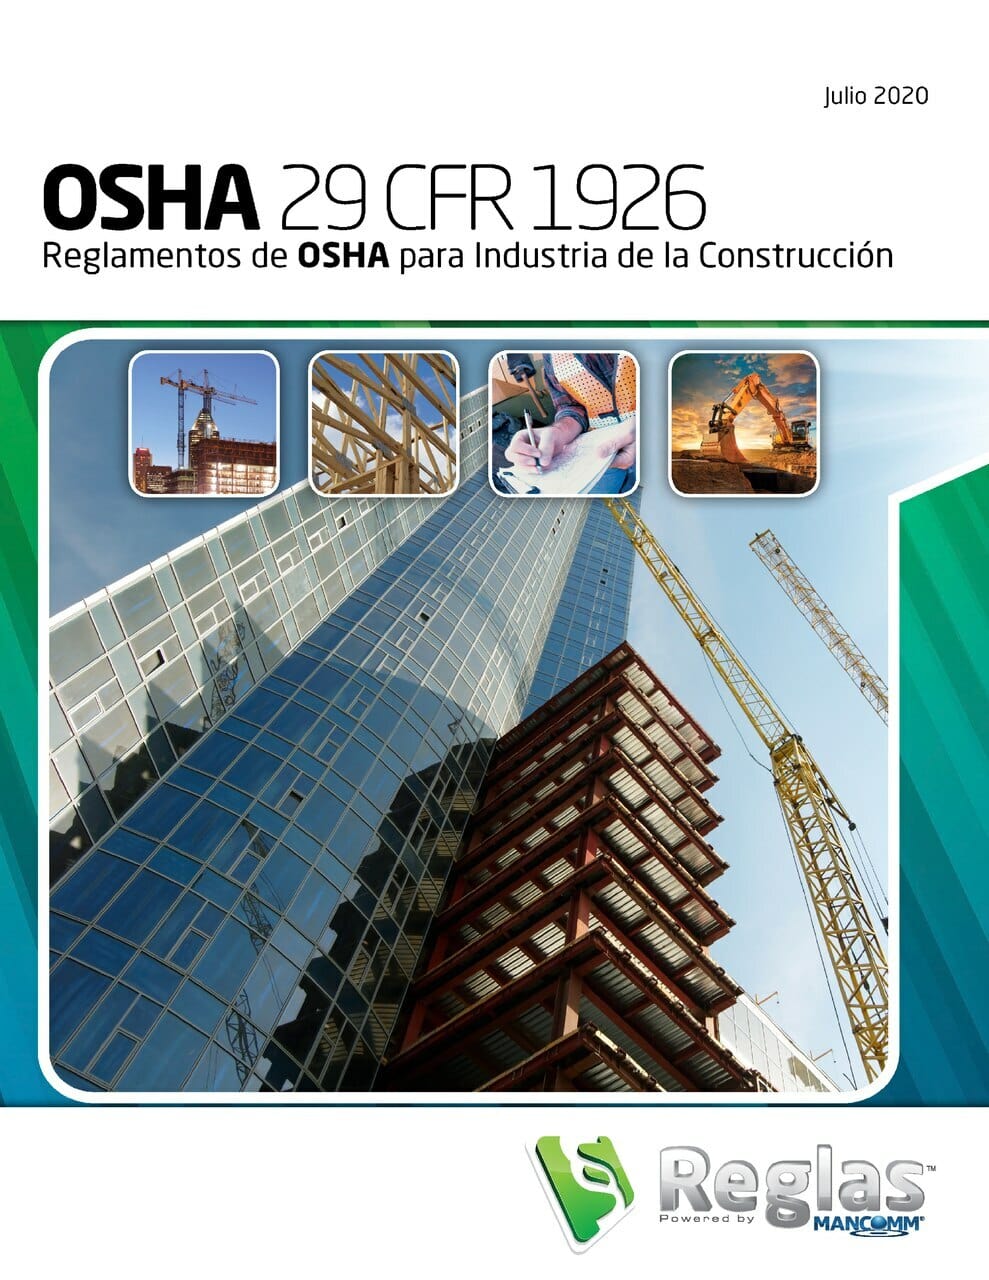 OSHA 29 CFR 1926 Reglamentos de OSHA para Industria de la Construccion, July 2020 Spanish Edition